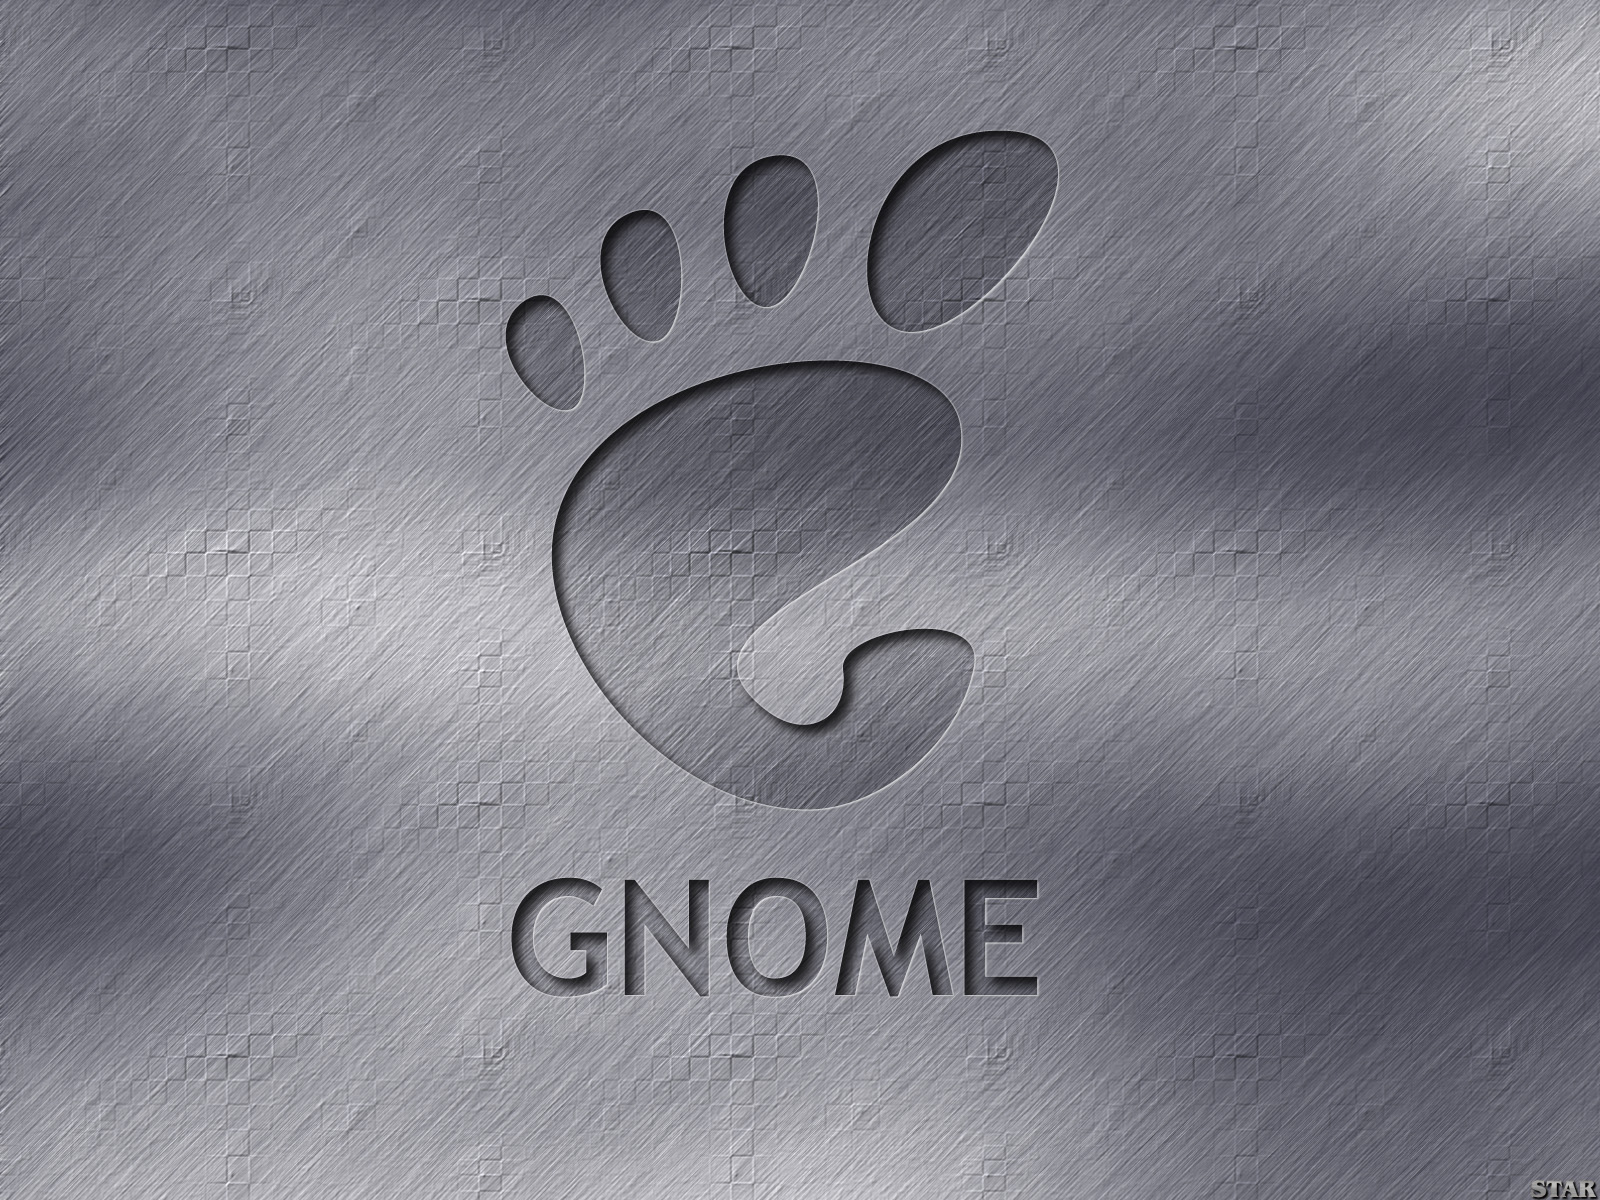 壁纸1600x12001600Gnome 1 6壁纸 Gnome 1600Gnome 第一辑壁纸 Gnome 1600Gnome 第一辑图片 Gnome 1600Gnome 第一辑素材 系统壁纸 系统图库 系统图片素材桌面壁纸